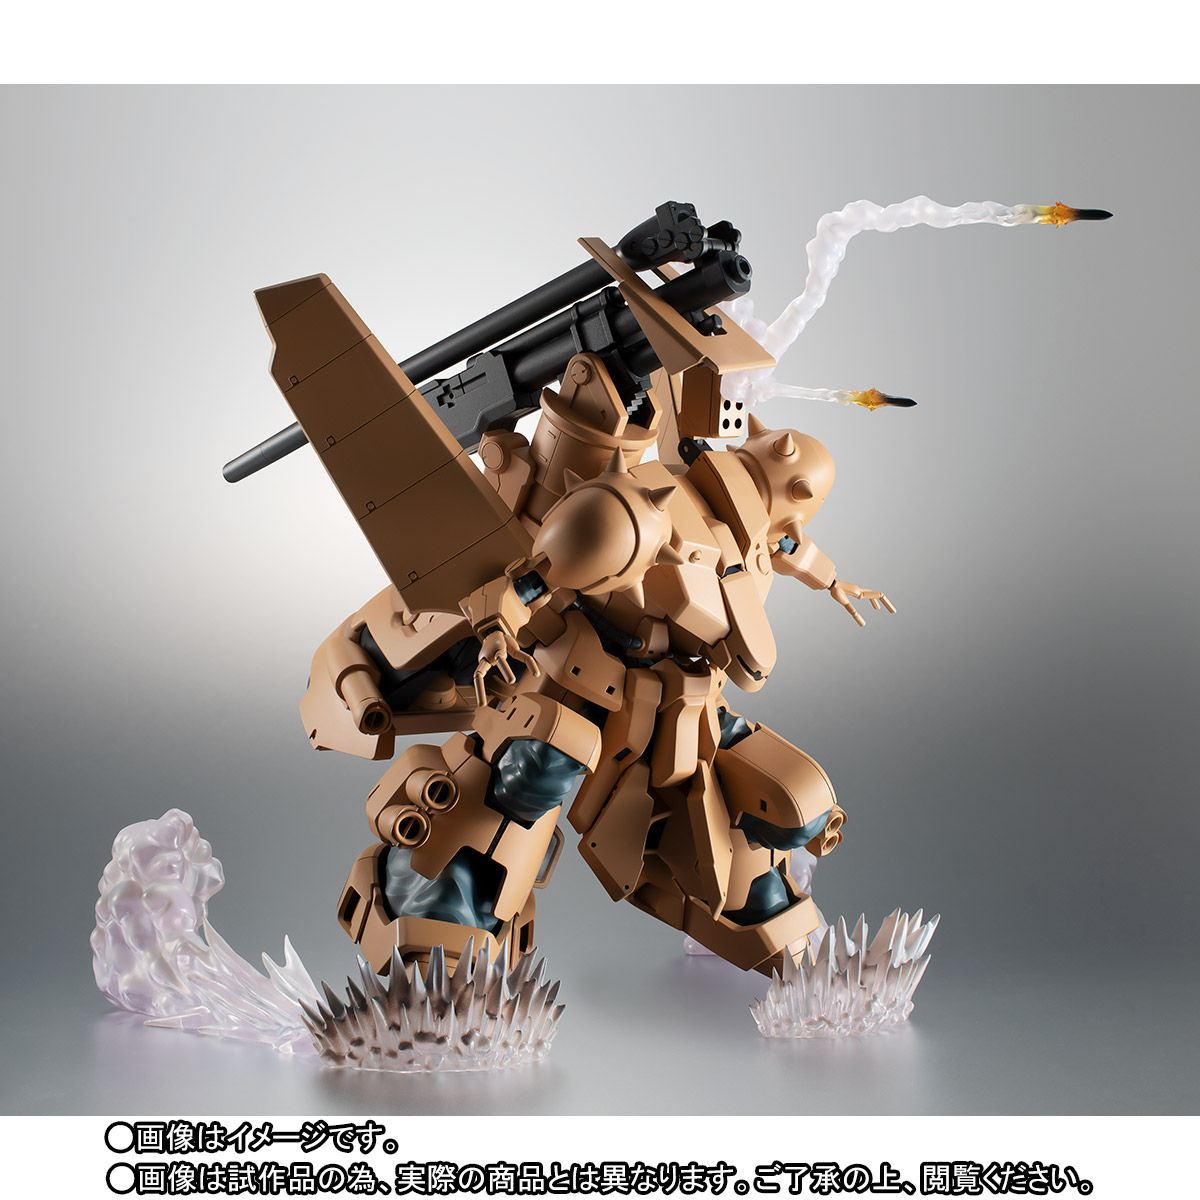 ROBOT魂〈SIDE MS〉『YMS-16M ザメル ver. A.N.I.M.E.』機動戦士ガンダム0083 可動フィギュア-004